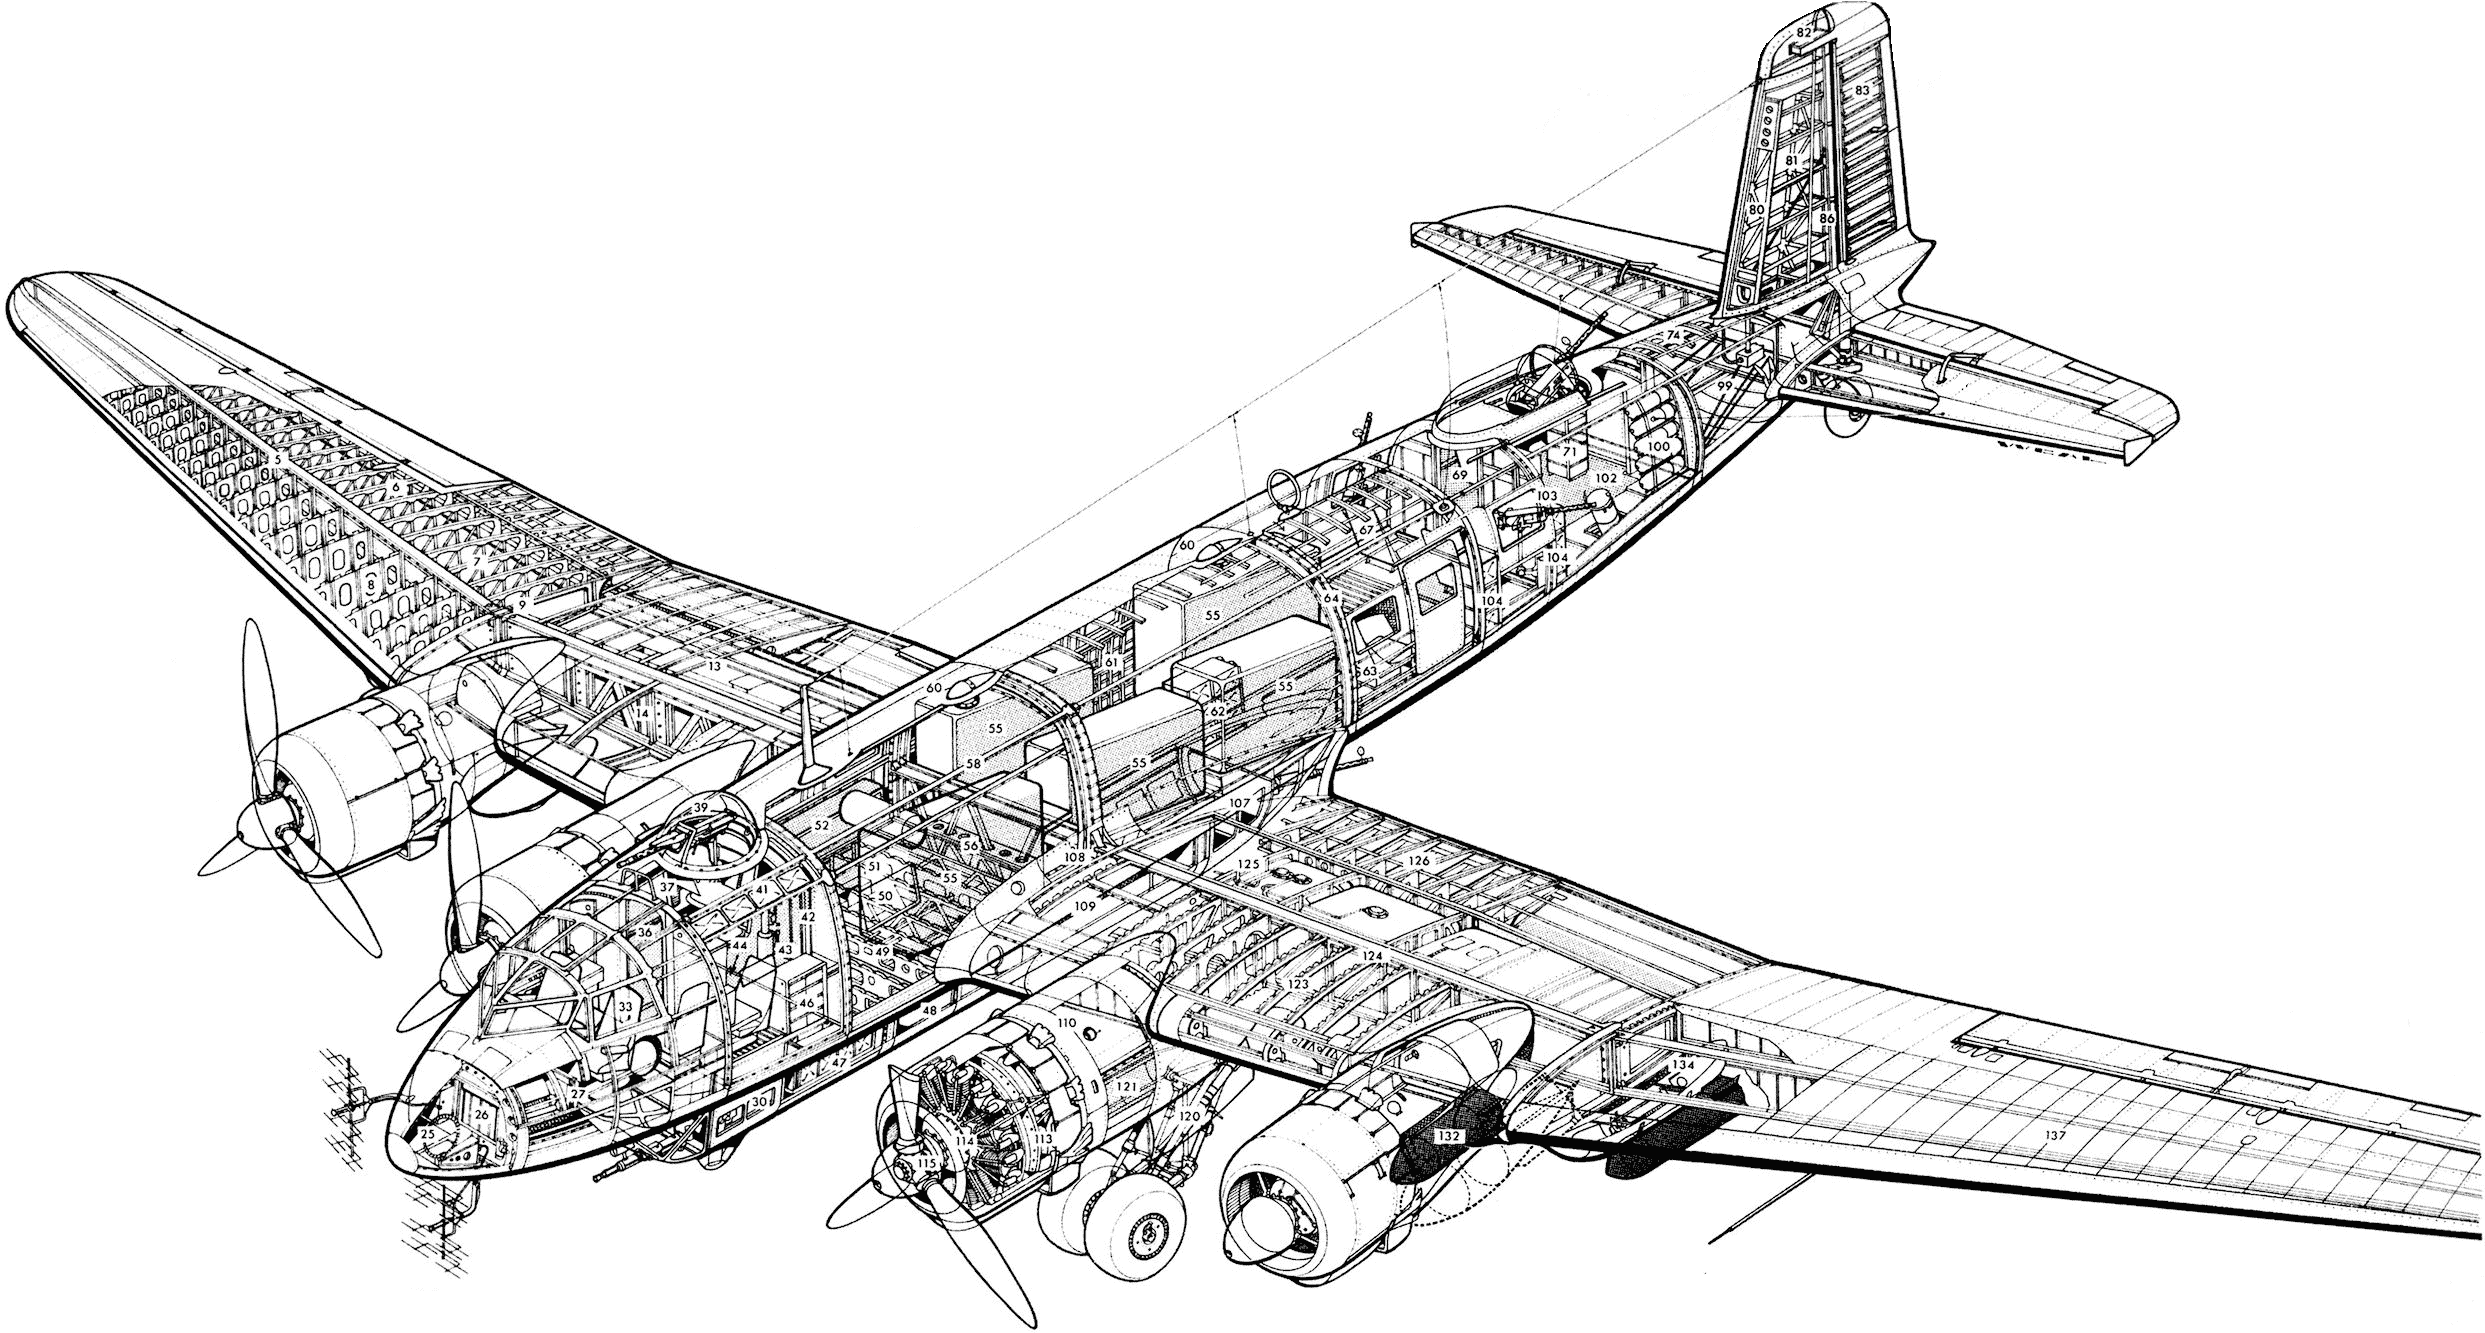 Focke-Wulf Fw 200 Condor cutaway